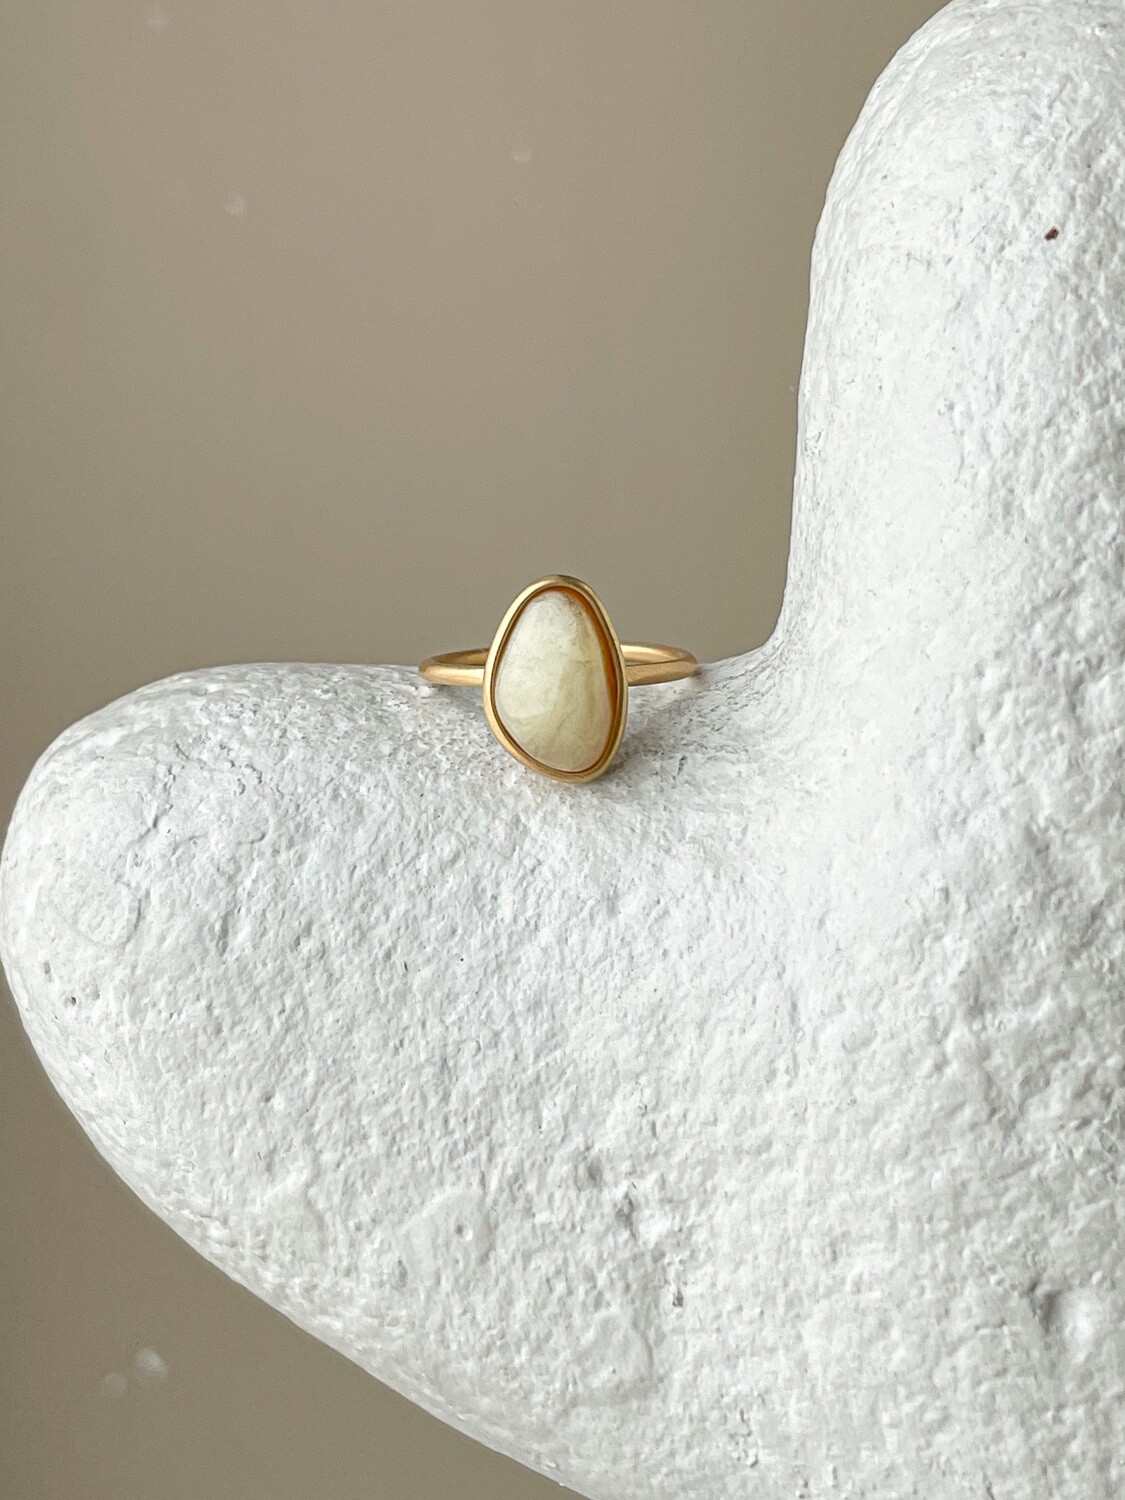 Тонкое кольцо с медовым янтарем, размер 16,25